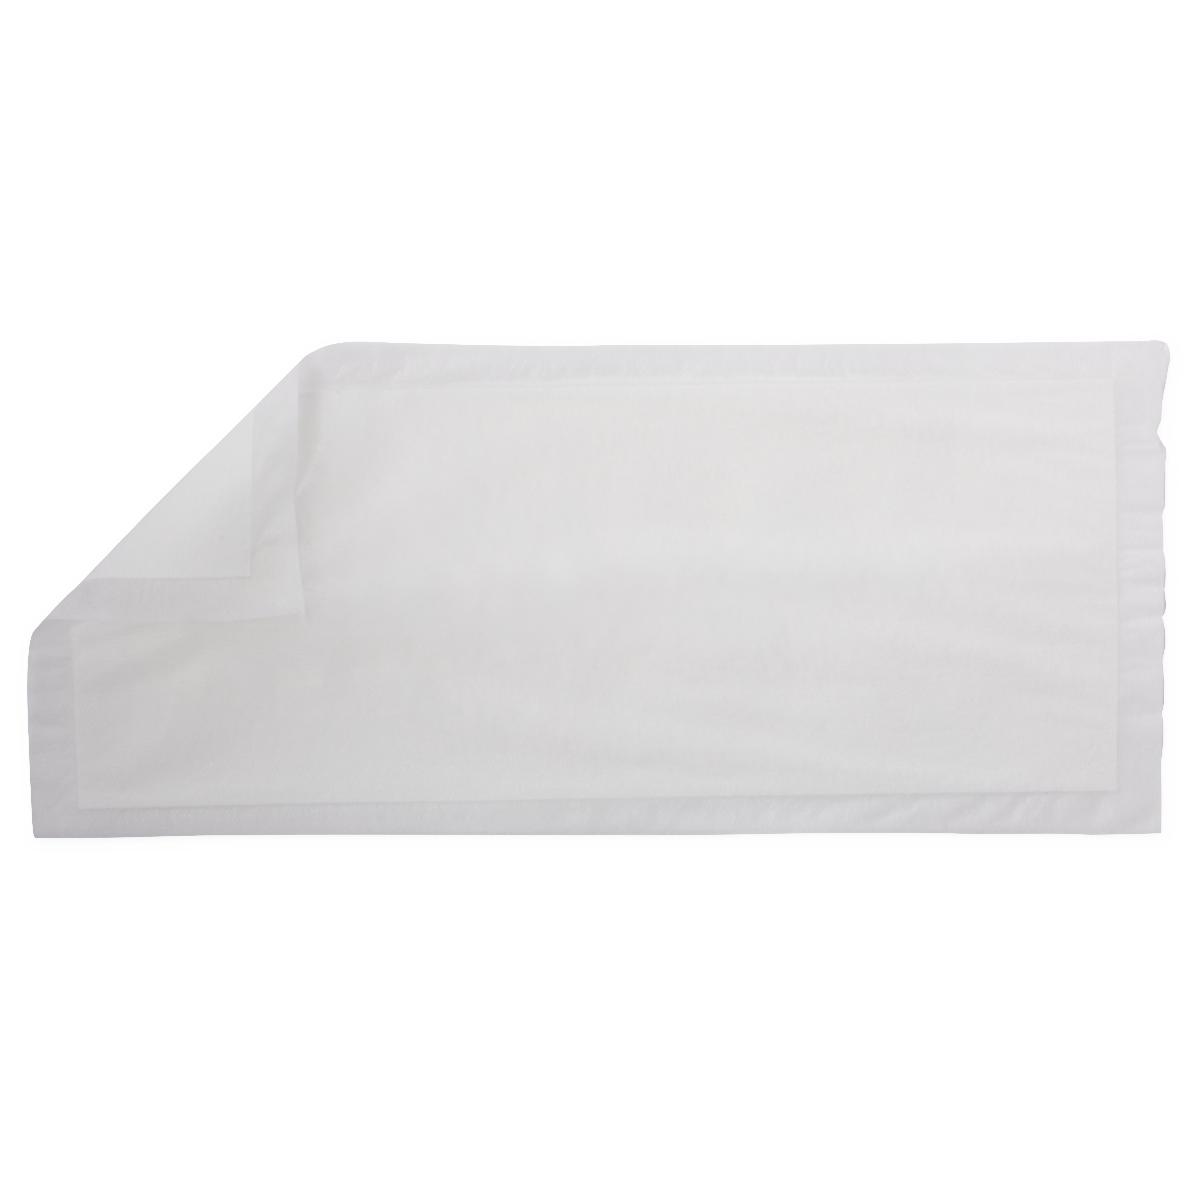 Ultrasorbs Dry Sheet, White, 6"x 14", Bag of 10